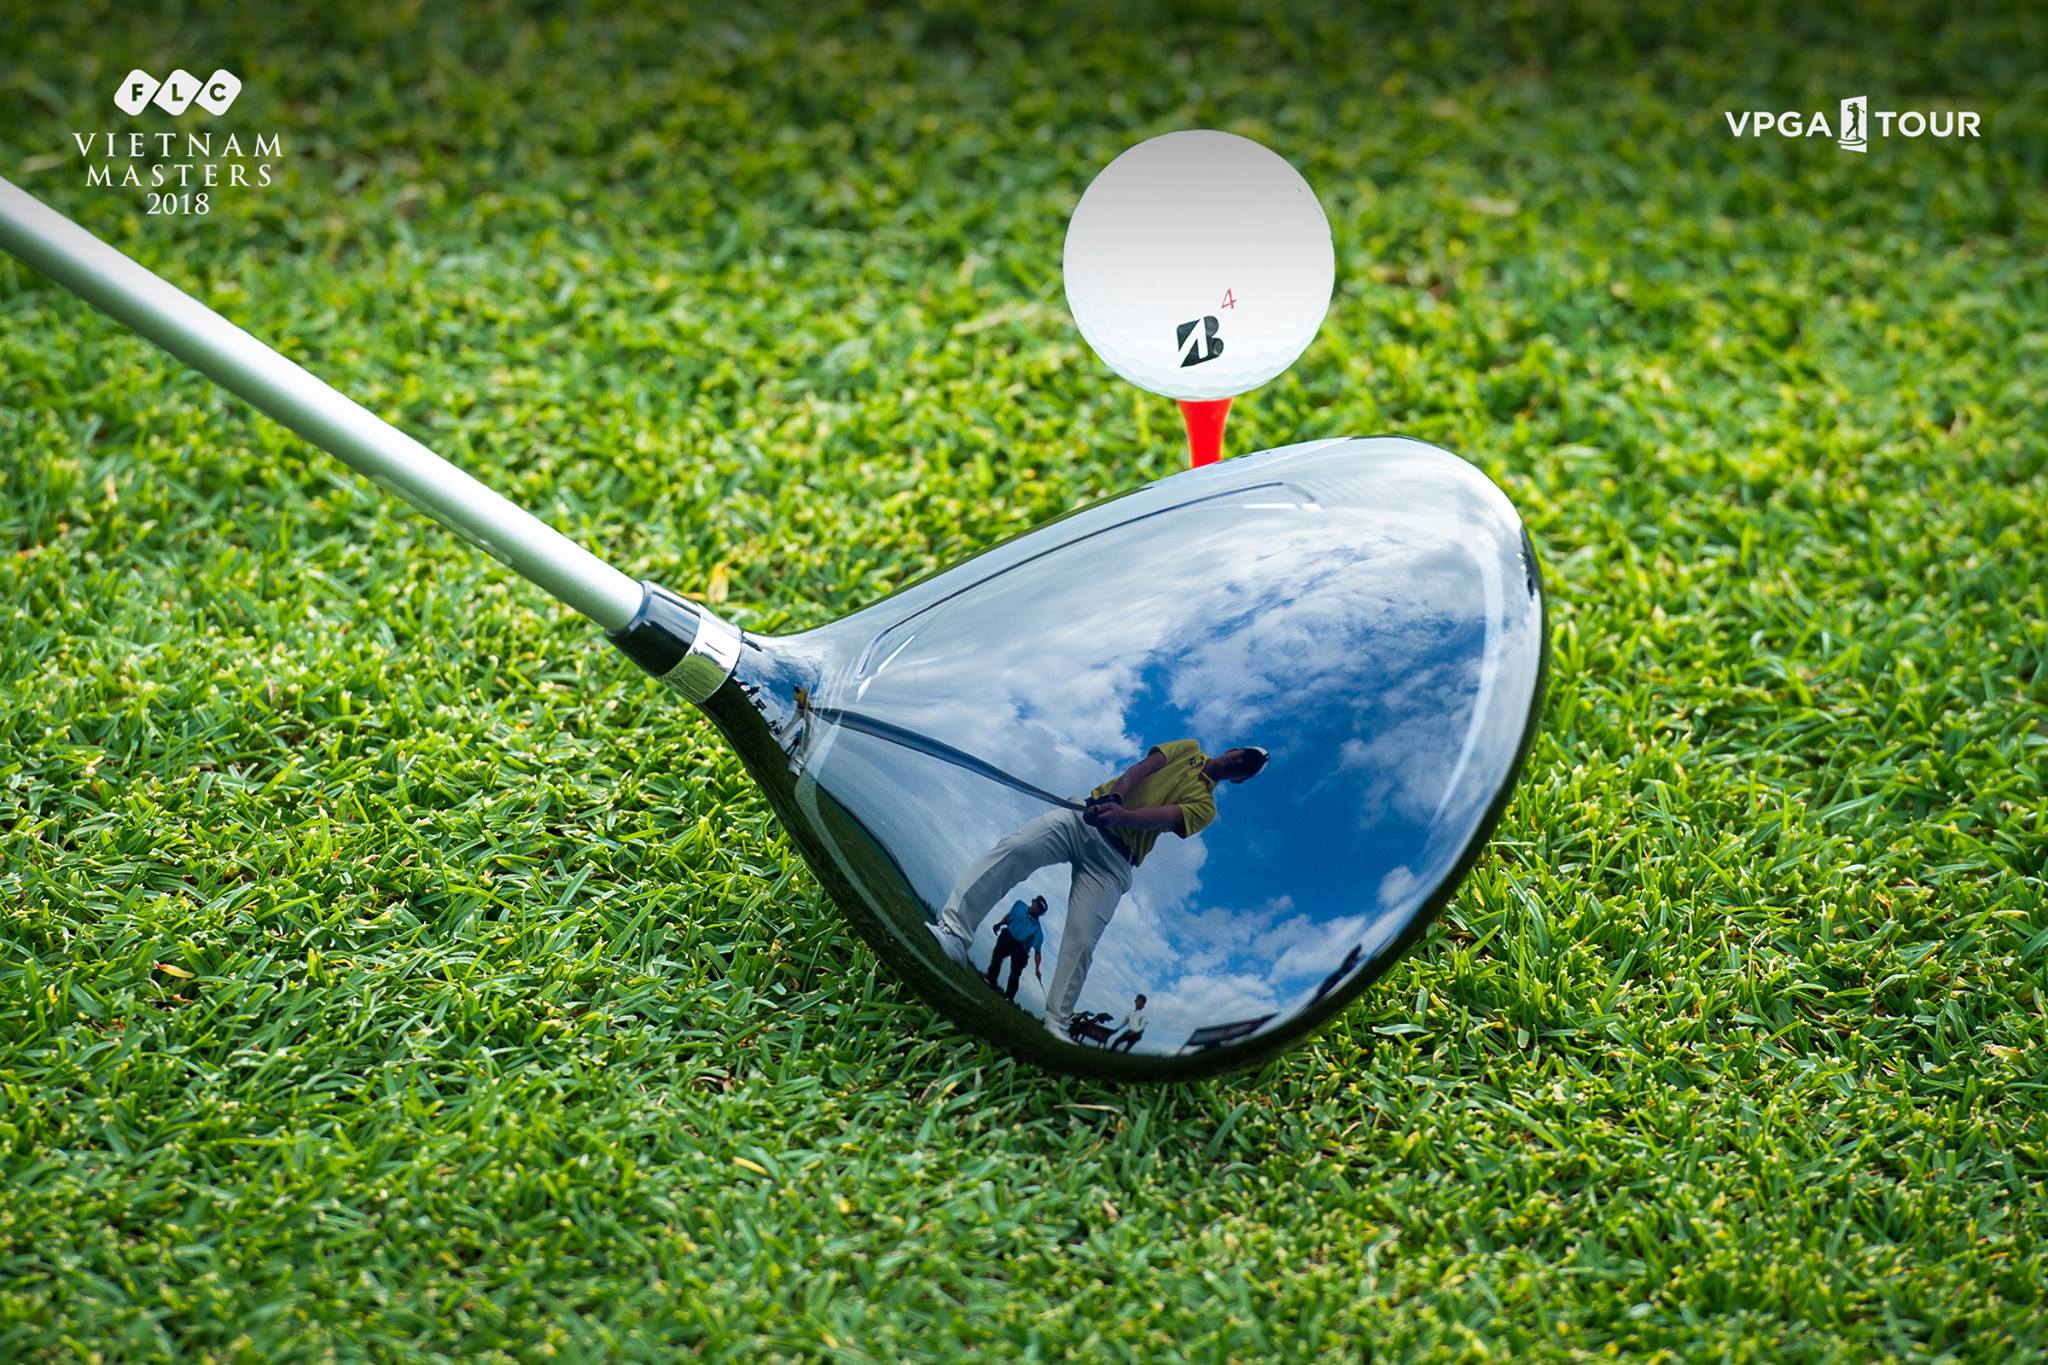 Luật một bóng, điểm đáng lưu ý mới cho các golfer thi đấu tại FLC Vietnam Masters 2019 presented by Porsche